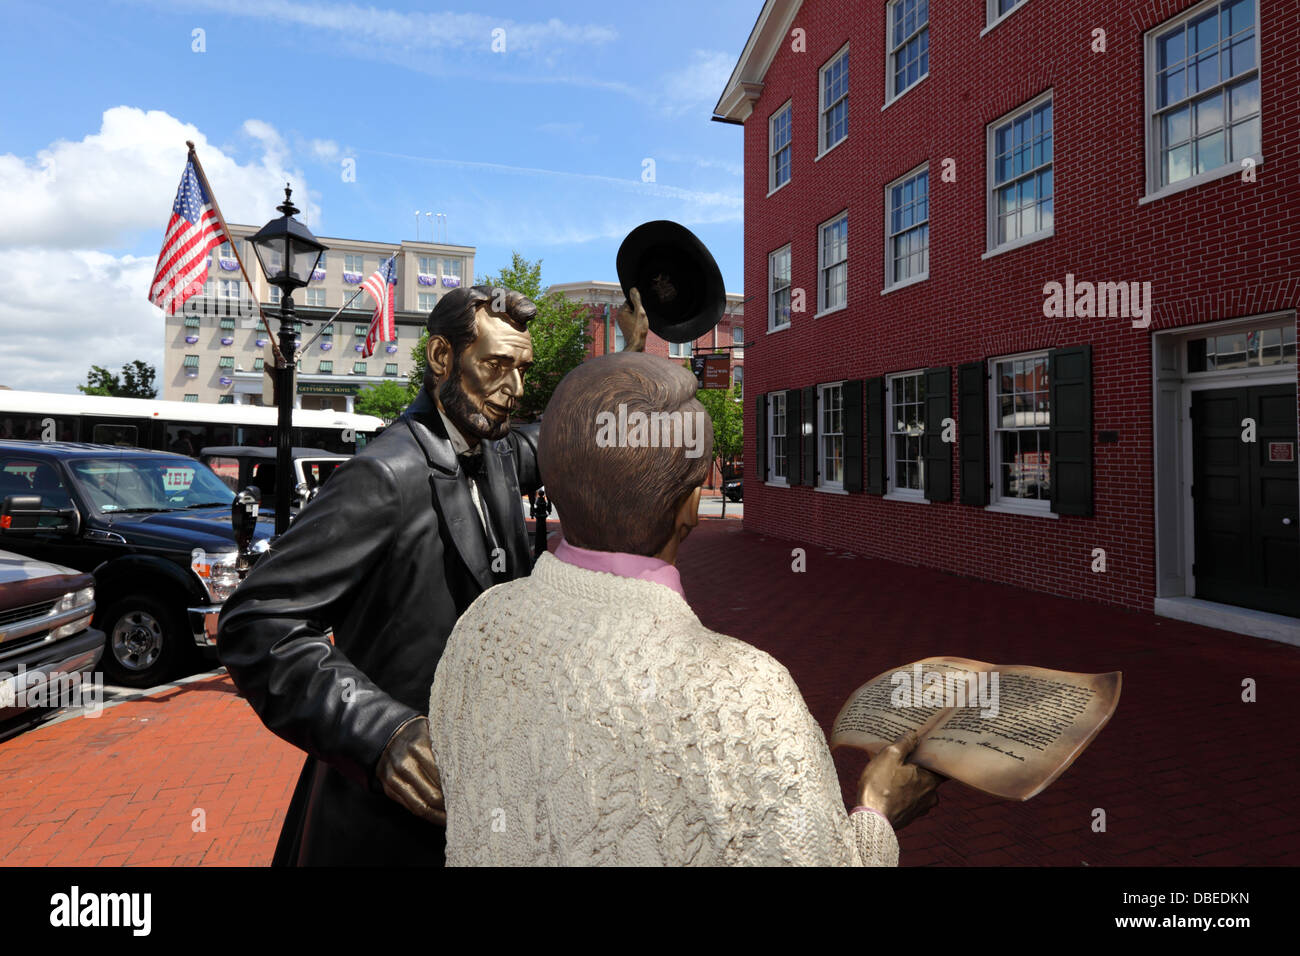 Retour Visite de Lincoln Square, statue en l'honneur d'Abraham Lincoln Discours de Gettysburg, Gettysburg, Pennsylvanie, USA Banque D'Images